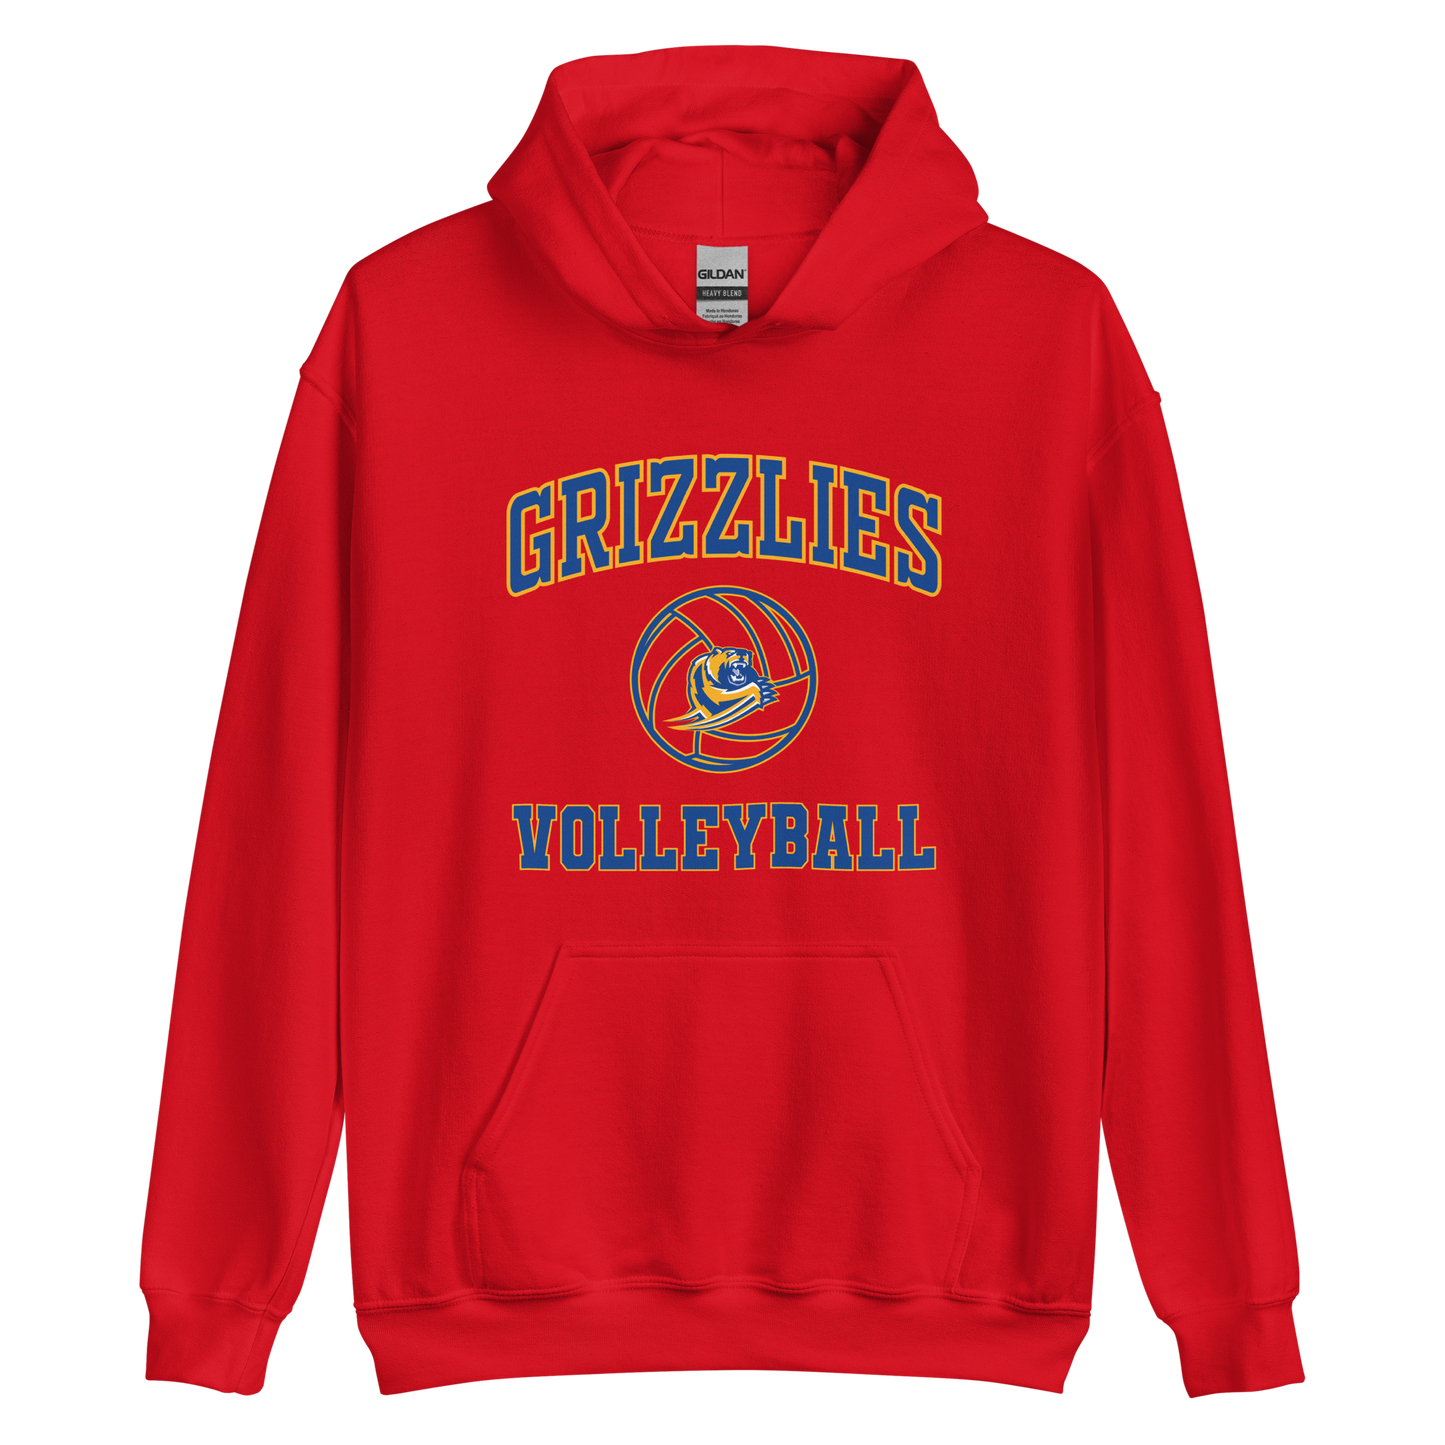 Grizzlies Volleyball Unisex Hoodie